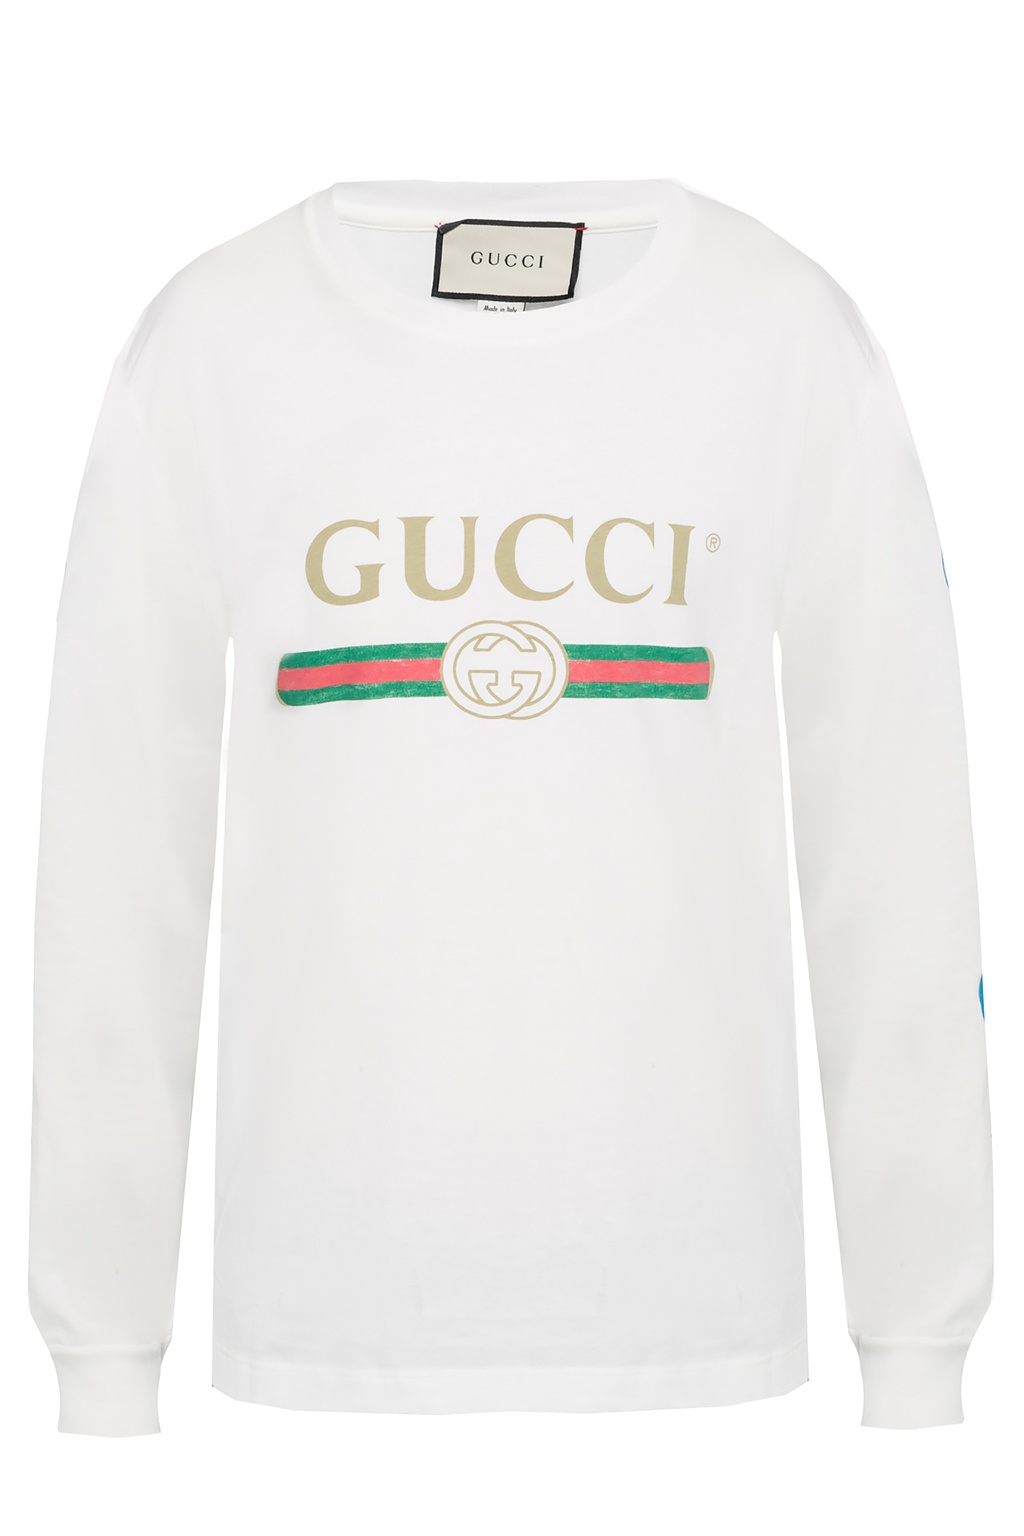 Samuel industri pære Gucci T Shirt Long Sleeve Discount, SAVE 40% - mpgc.net